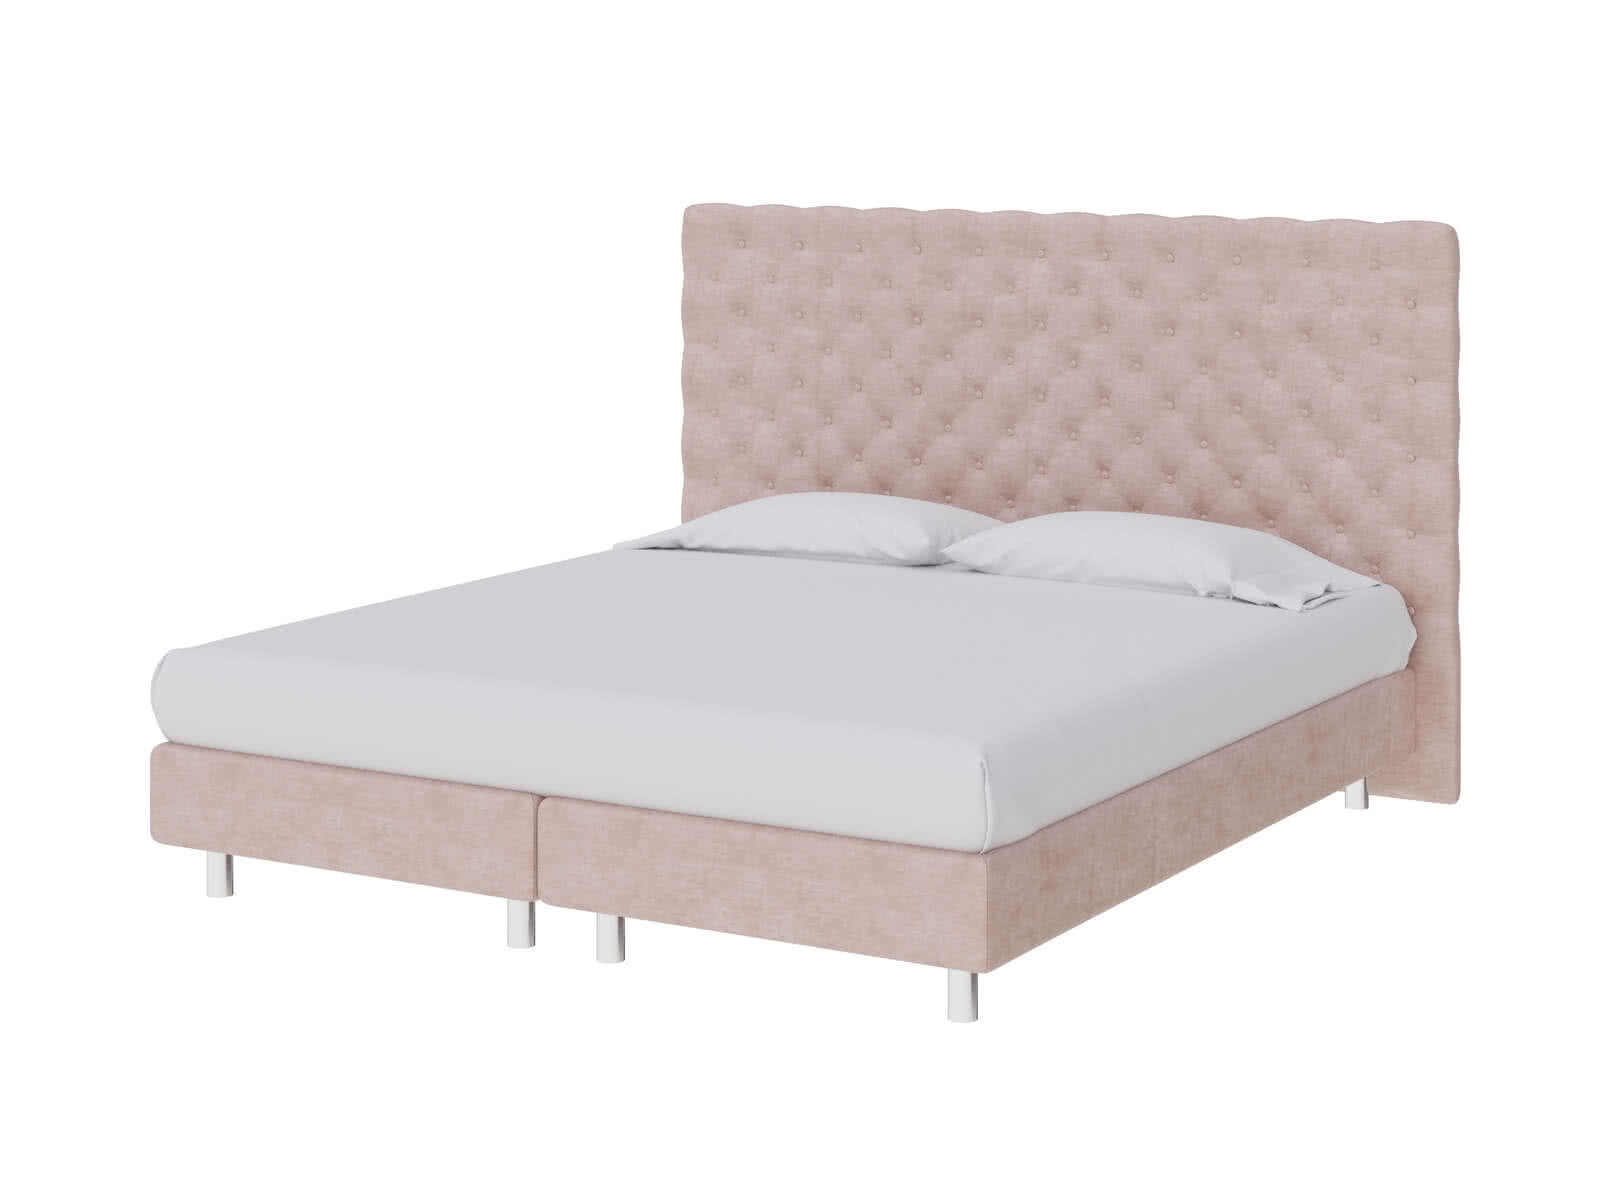 Кровать ProSon Europe Paris Elite 80 х 200 см Лофти Тауп от производителя — цены фабрики, доставка